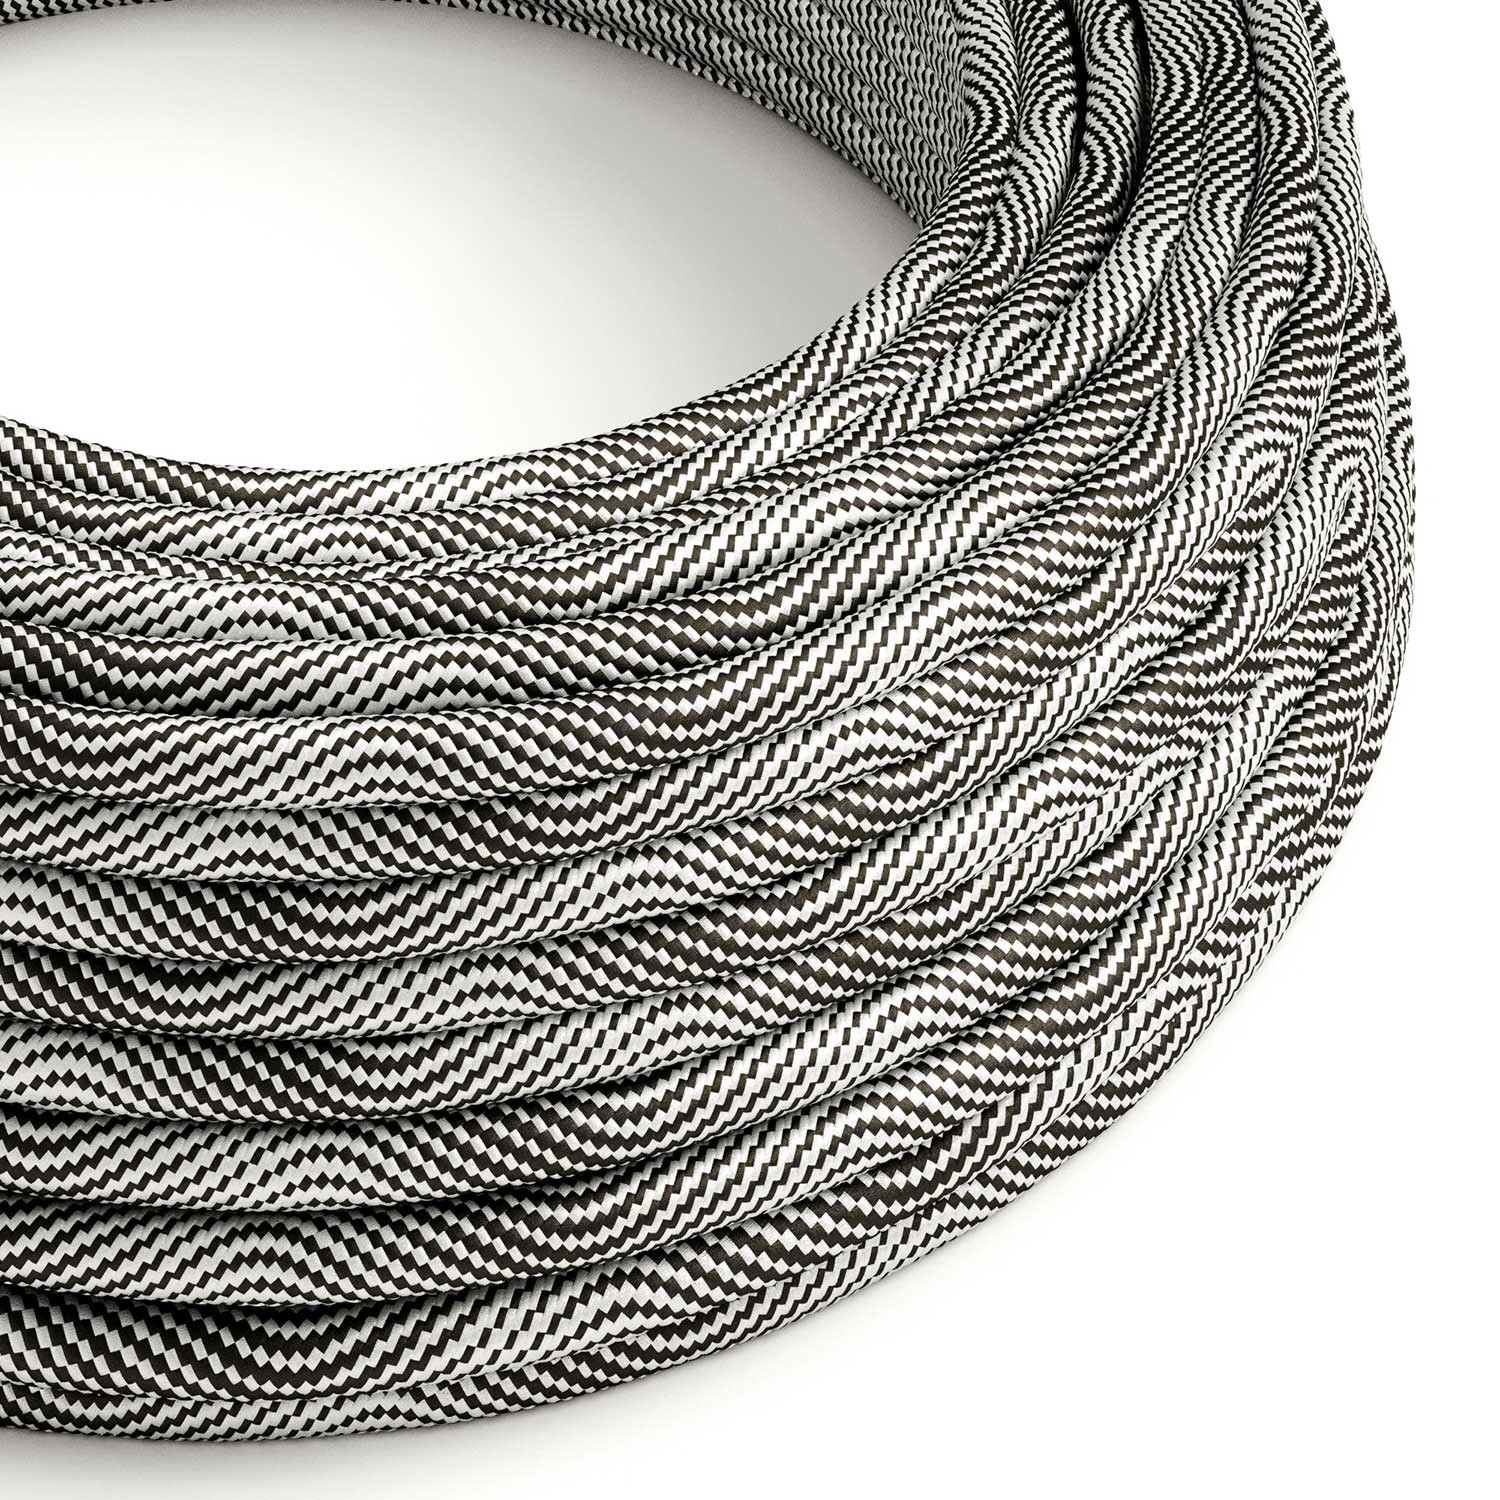 Textilkabel, Optical schwarz-silber glänzend Vertigo - Das Original von Creative-Cables - ERM64 rund 2x0.75mm / 3x0.75mm